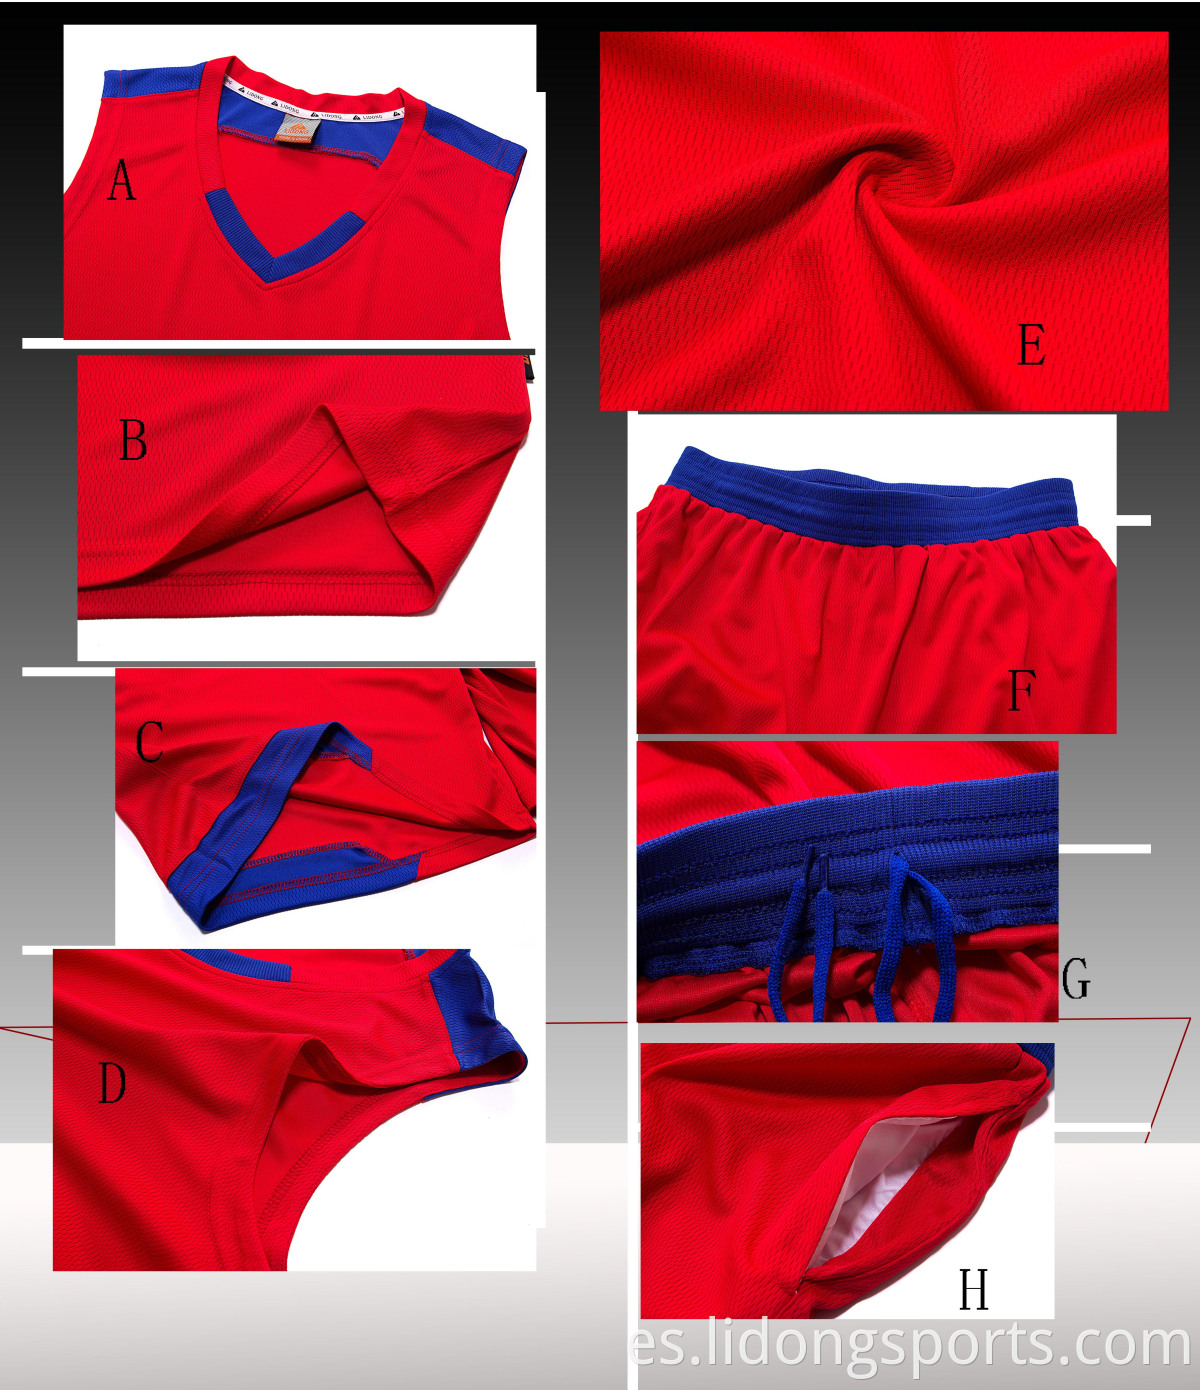 Último diseño de camiseta de baloncesto Color naranja sublimación personalizada New Style Basketball Uniformes